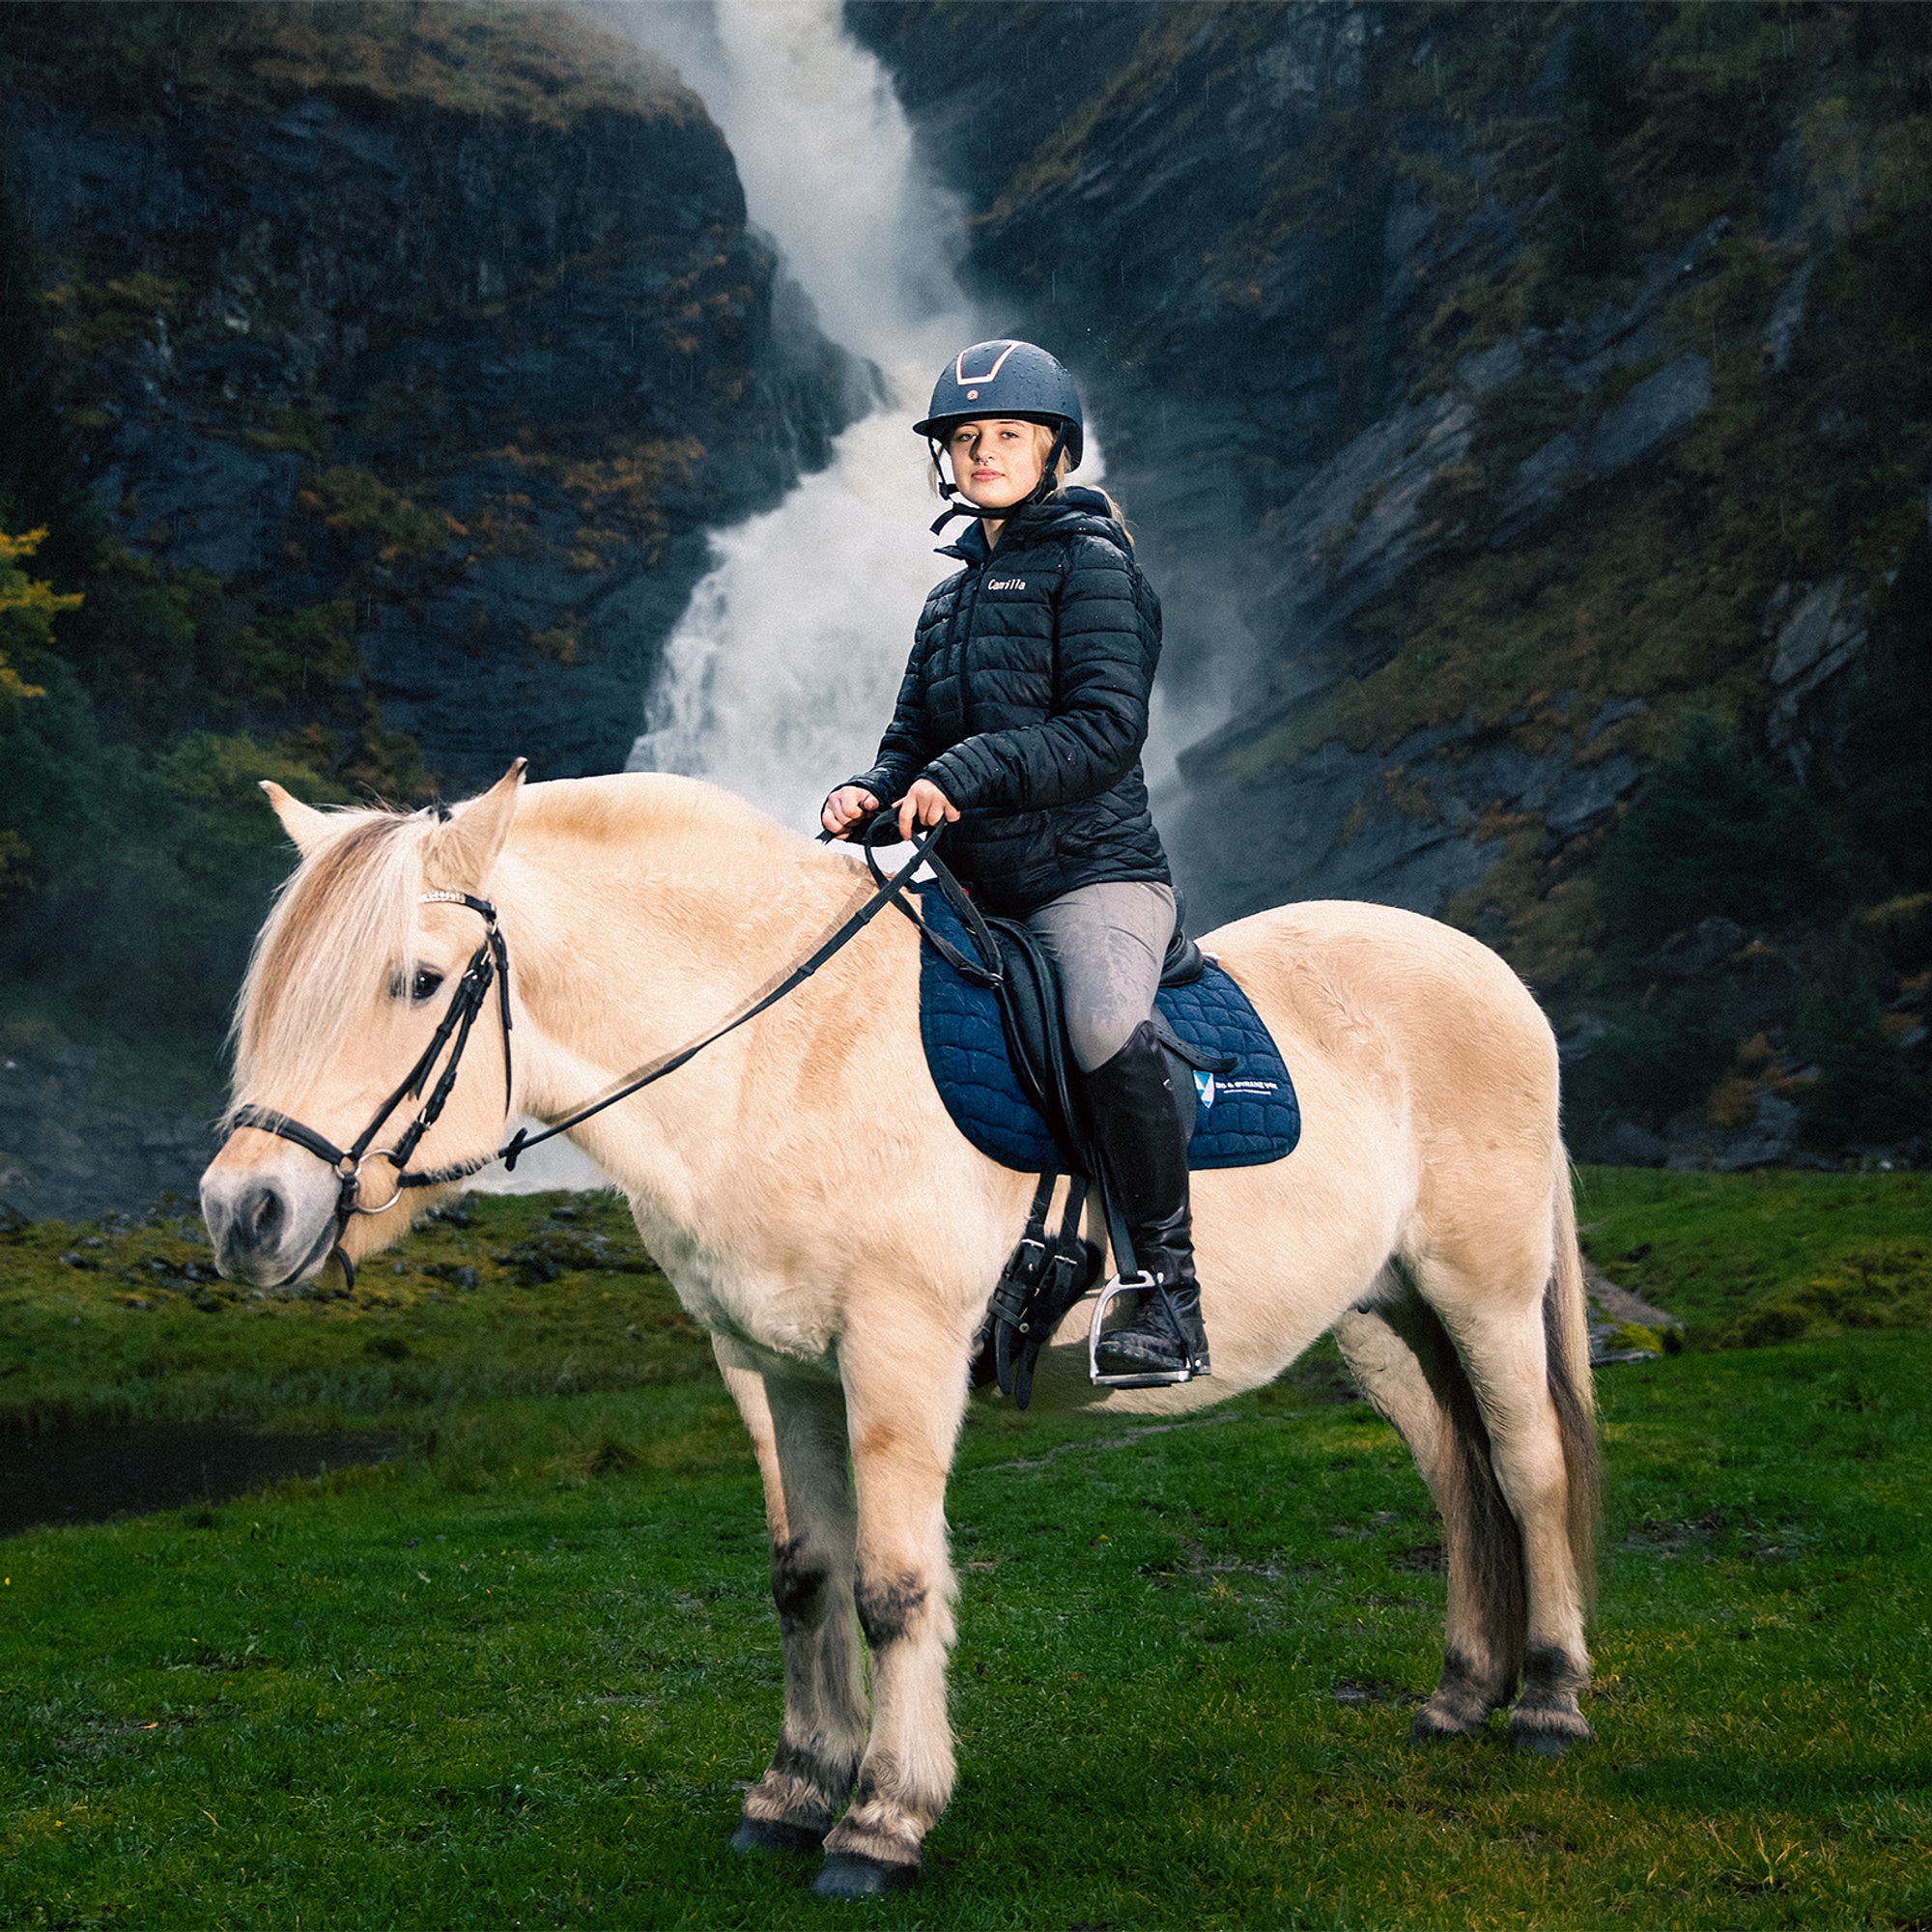 Bilde av skribenten, Camilla, på en hest. I bakgrunnen ser du en stor foss i et frodig landskap. 